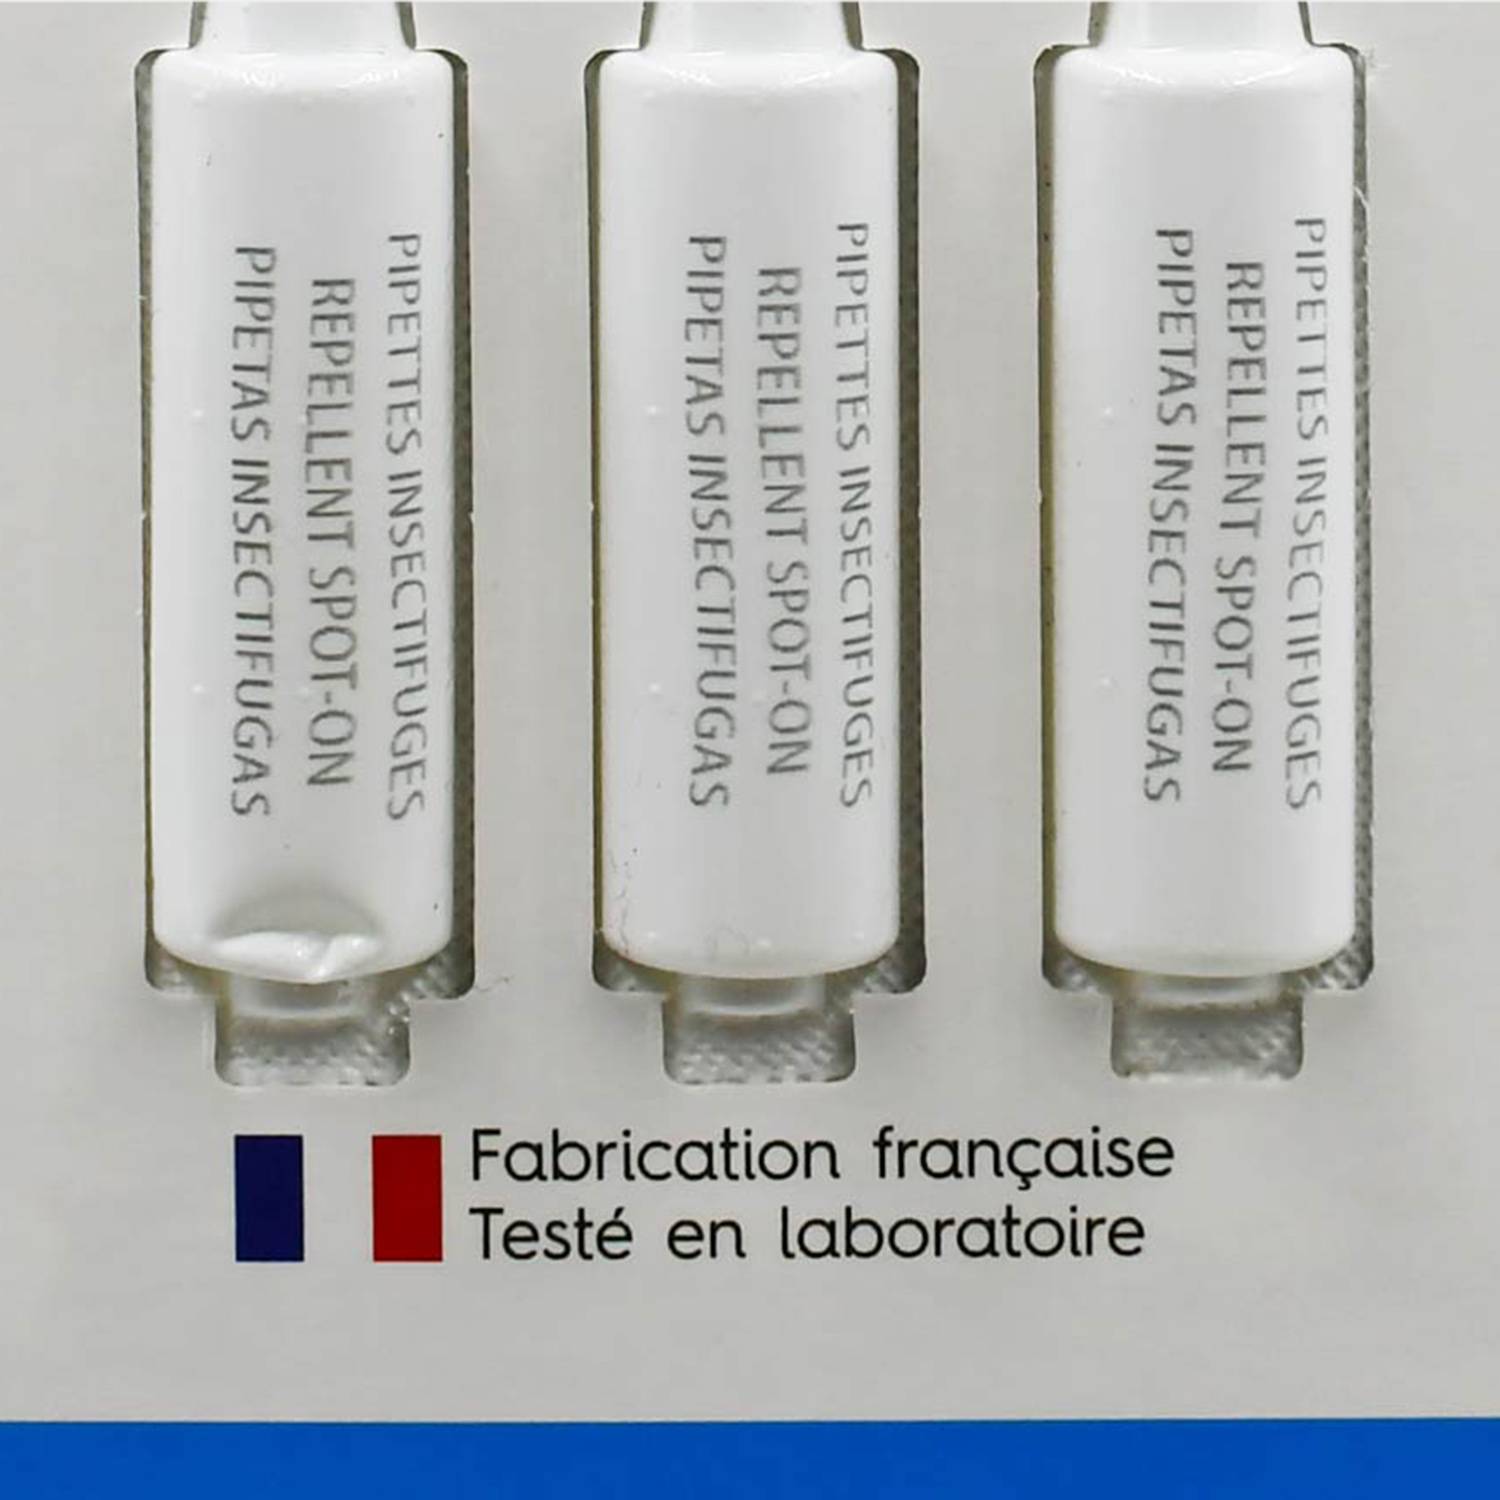 3 antiparasitaire pipetten Oscar voor kleine hond, gemaakt in Frankrijk Photo2